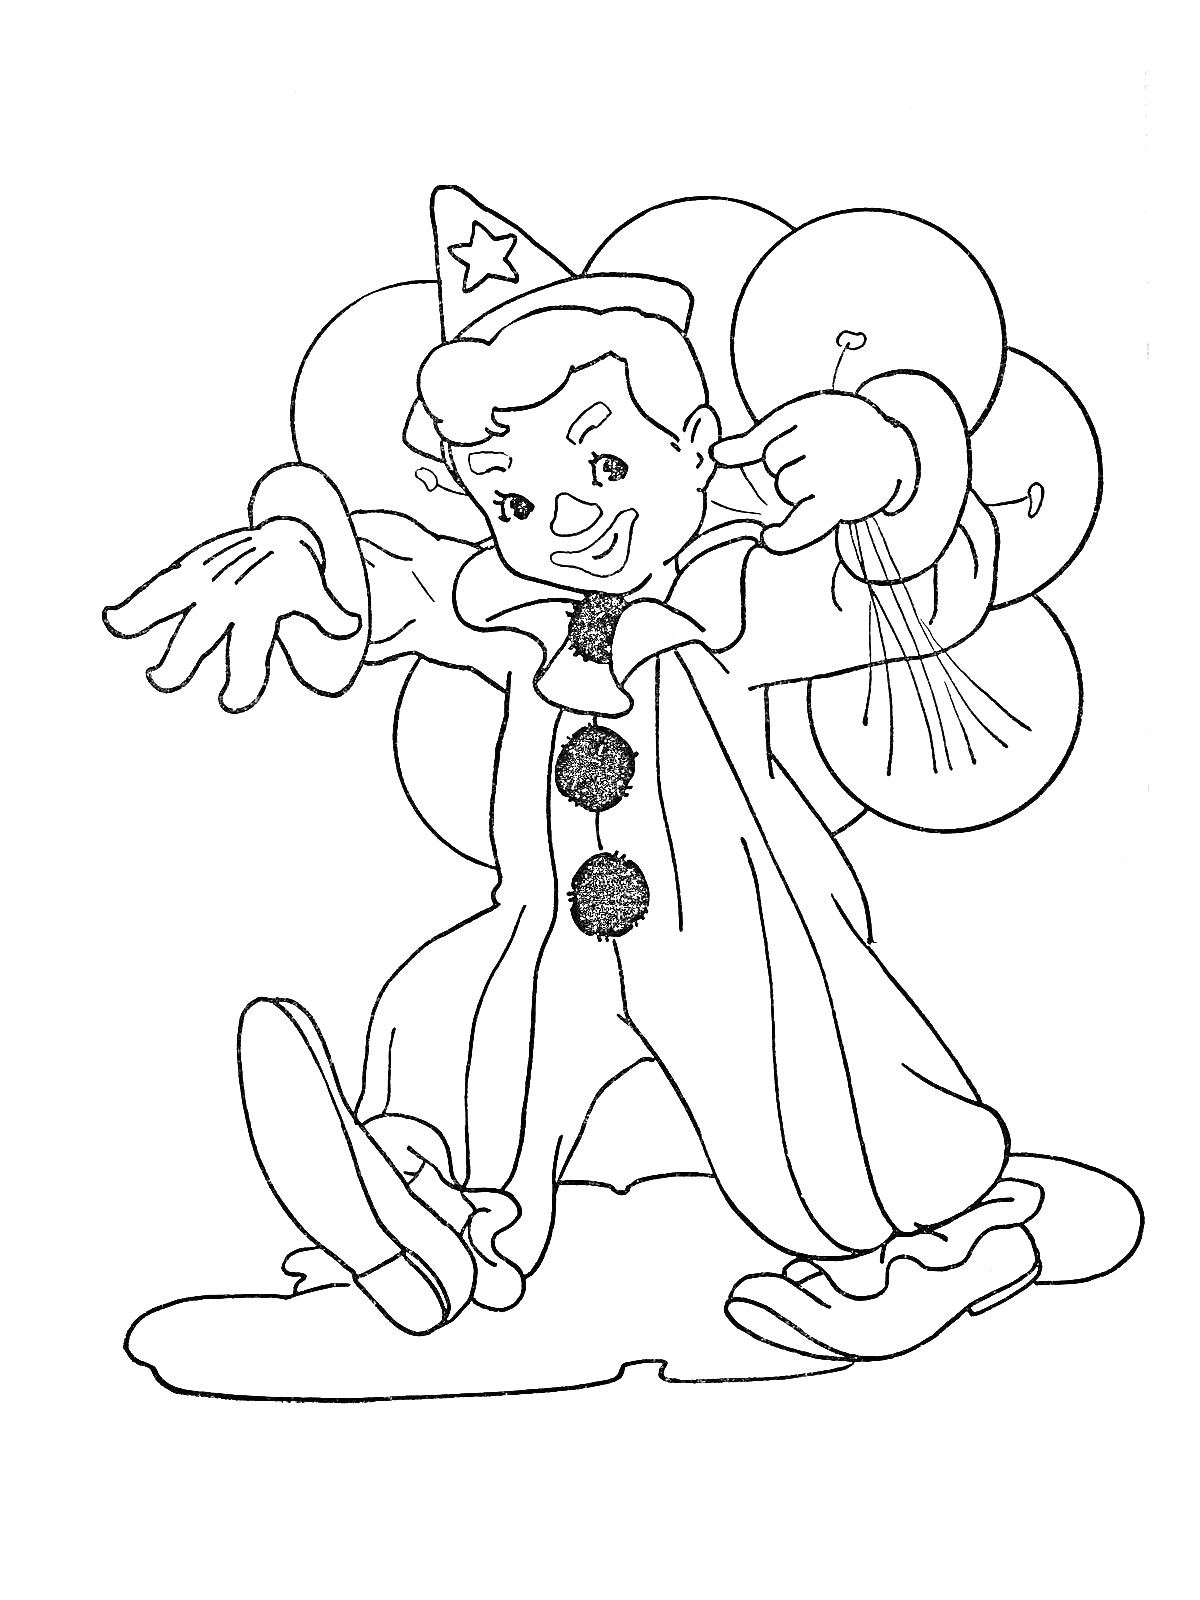 Раскраска Клоун в колпаке со звездой, стоящий на земле, с воздушными шарами за спиной